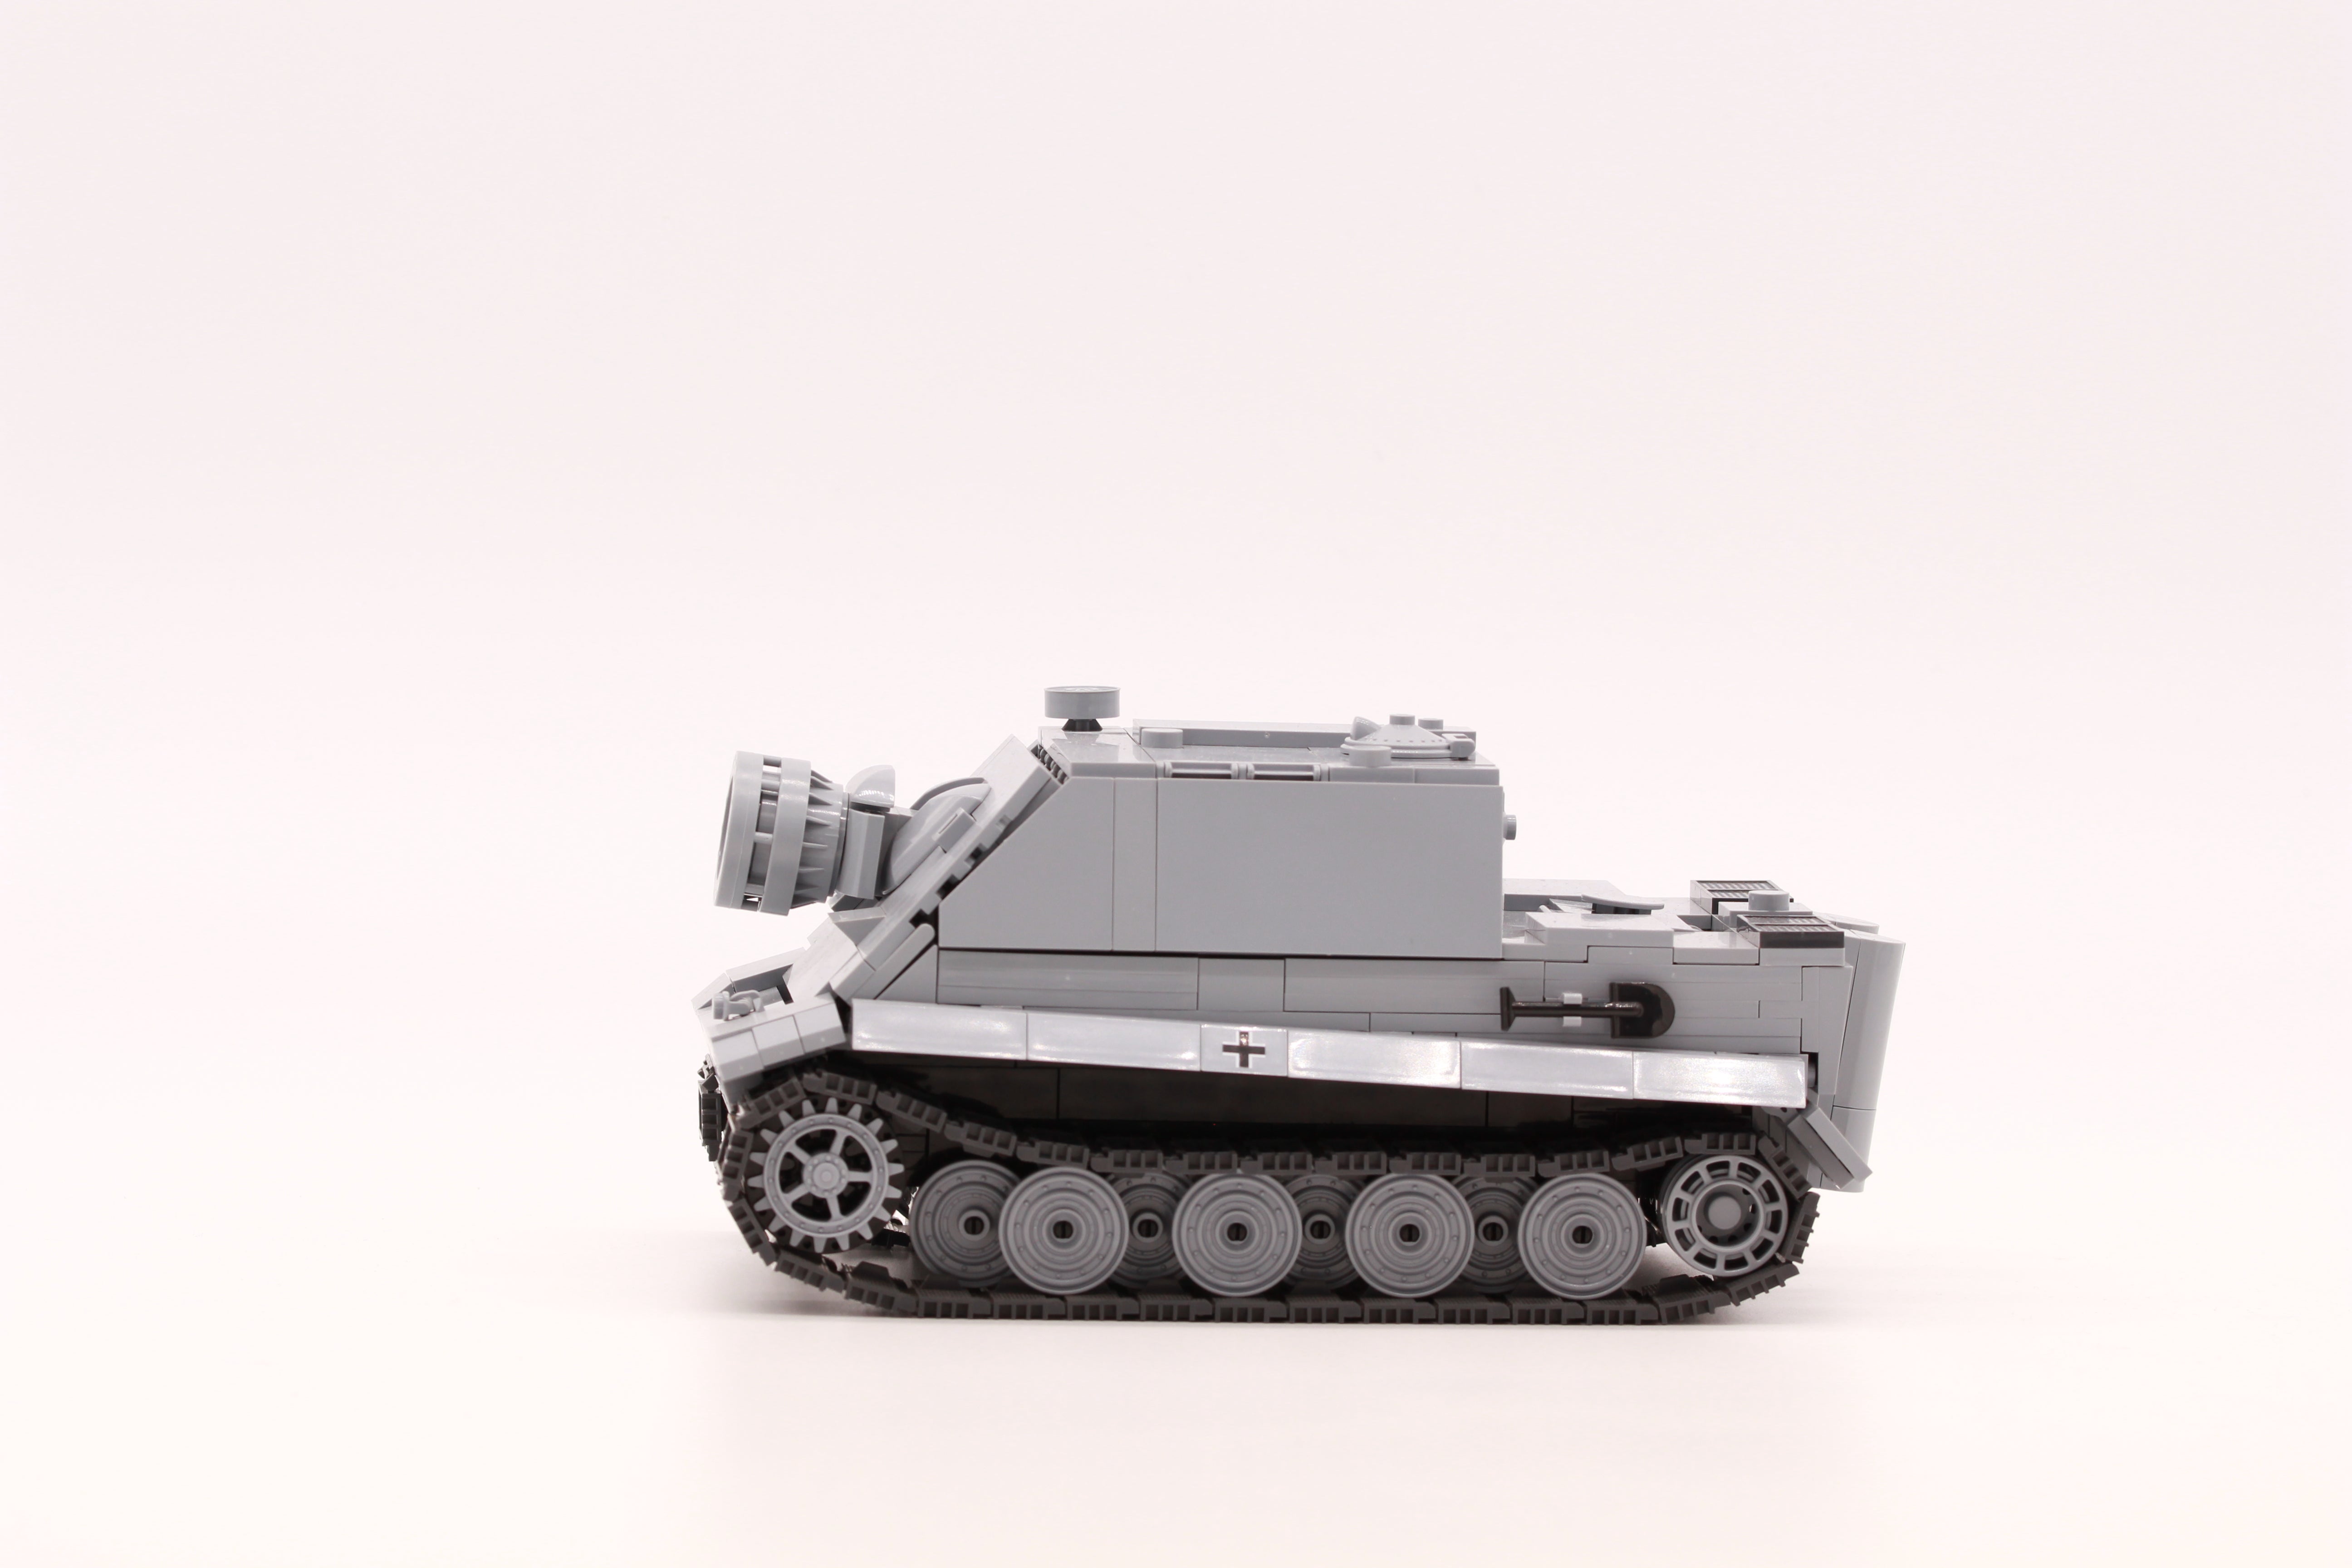 Sturmpanzer VI "Sturmtiger grau